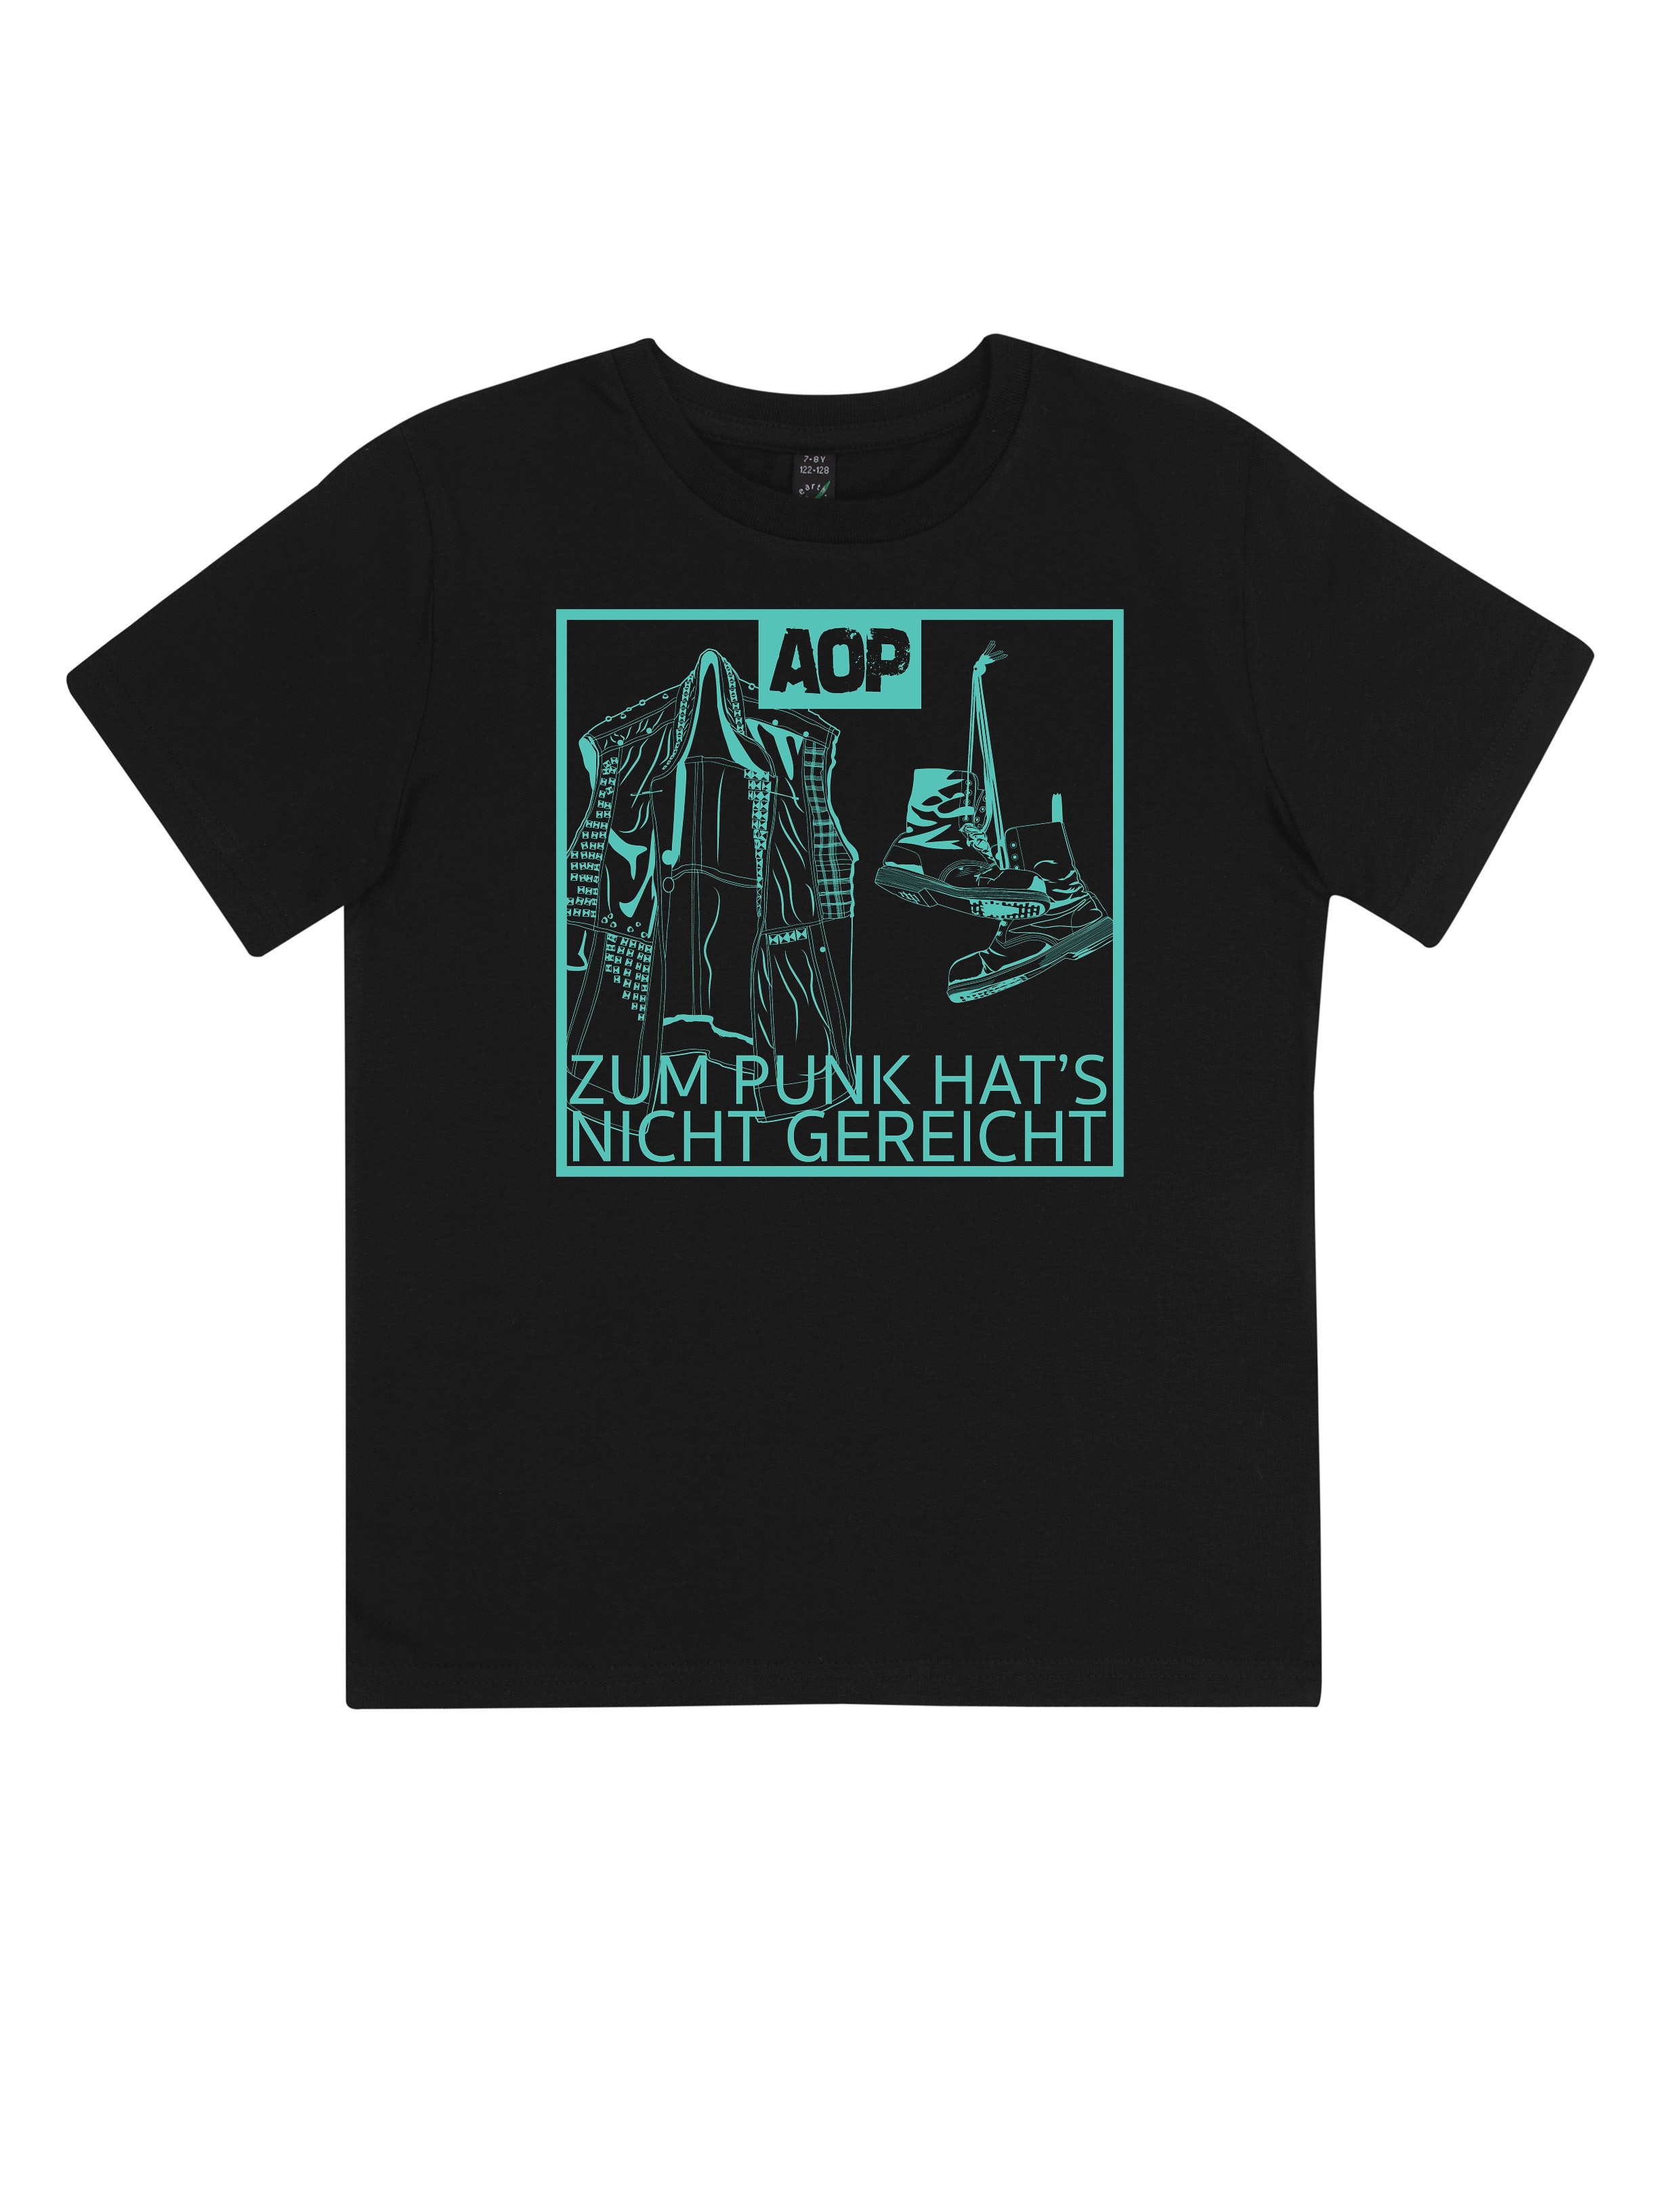 AOP – Zum Punk hat's nicht gereicht – Kids-Shirt (schwarz)